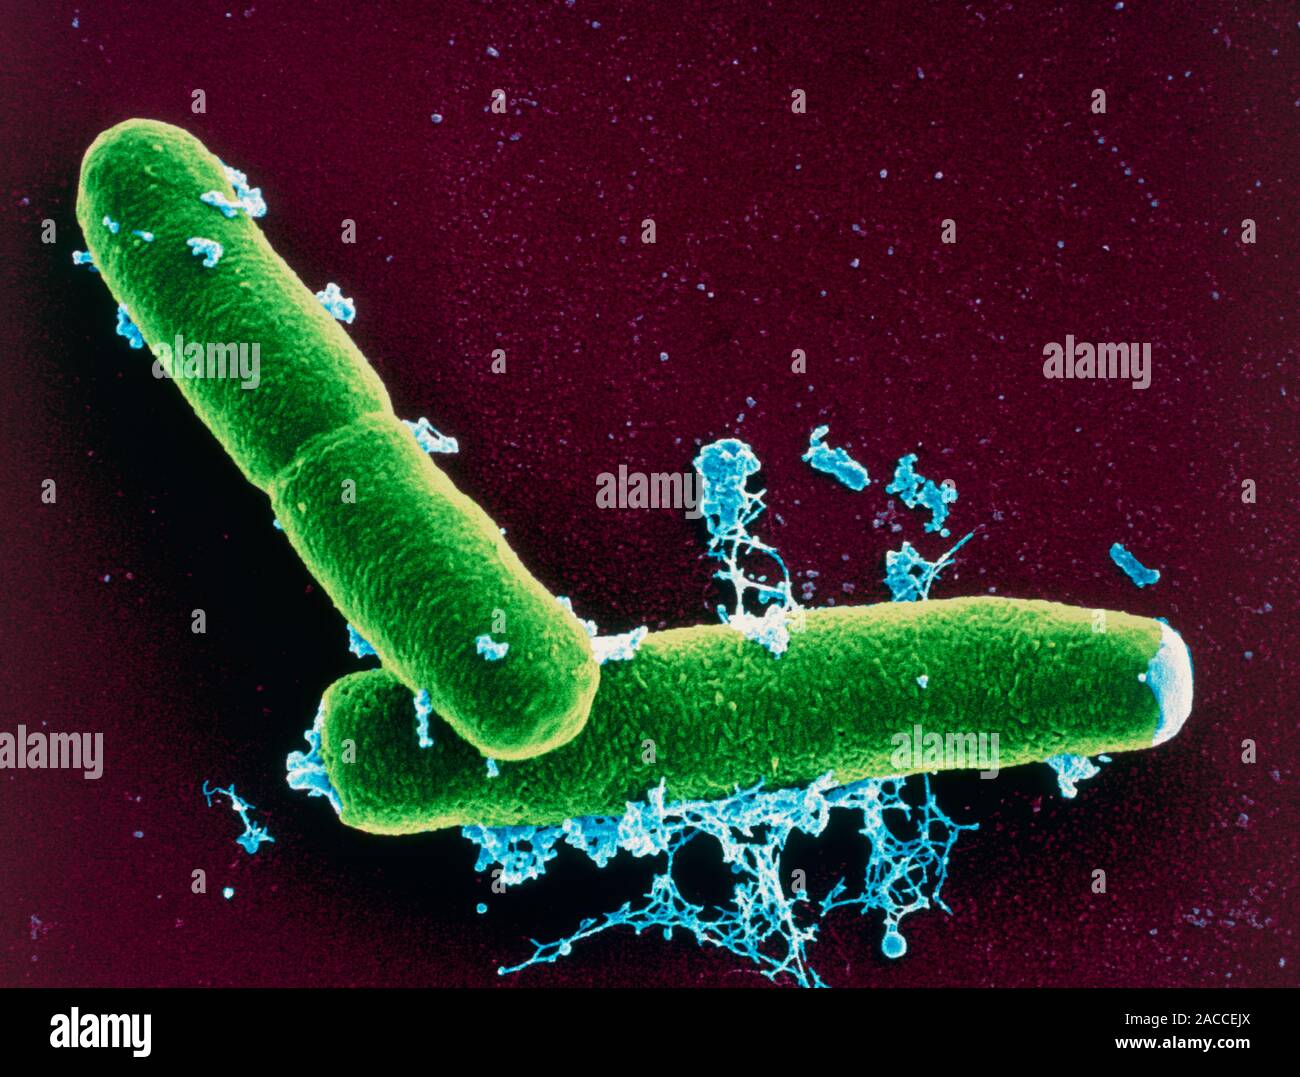 Бактерия вызывающая язву. Бацилла антрацис Сибирская язва. Bacillus anthracis Сибирская язва. Бактерия сибирской язвы под микроскопом.